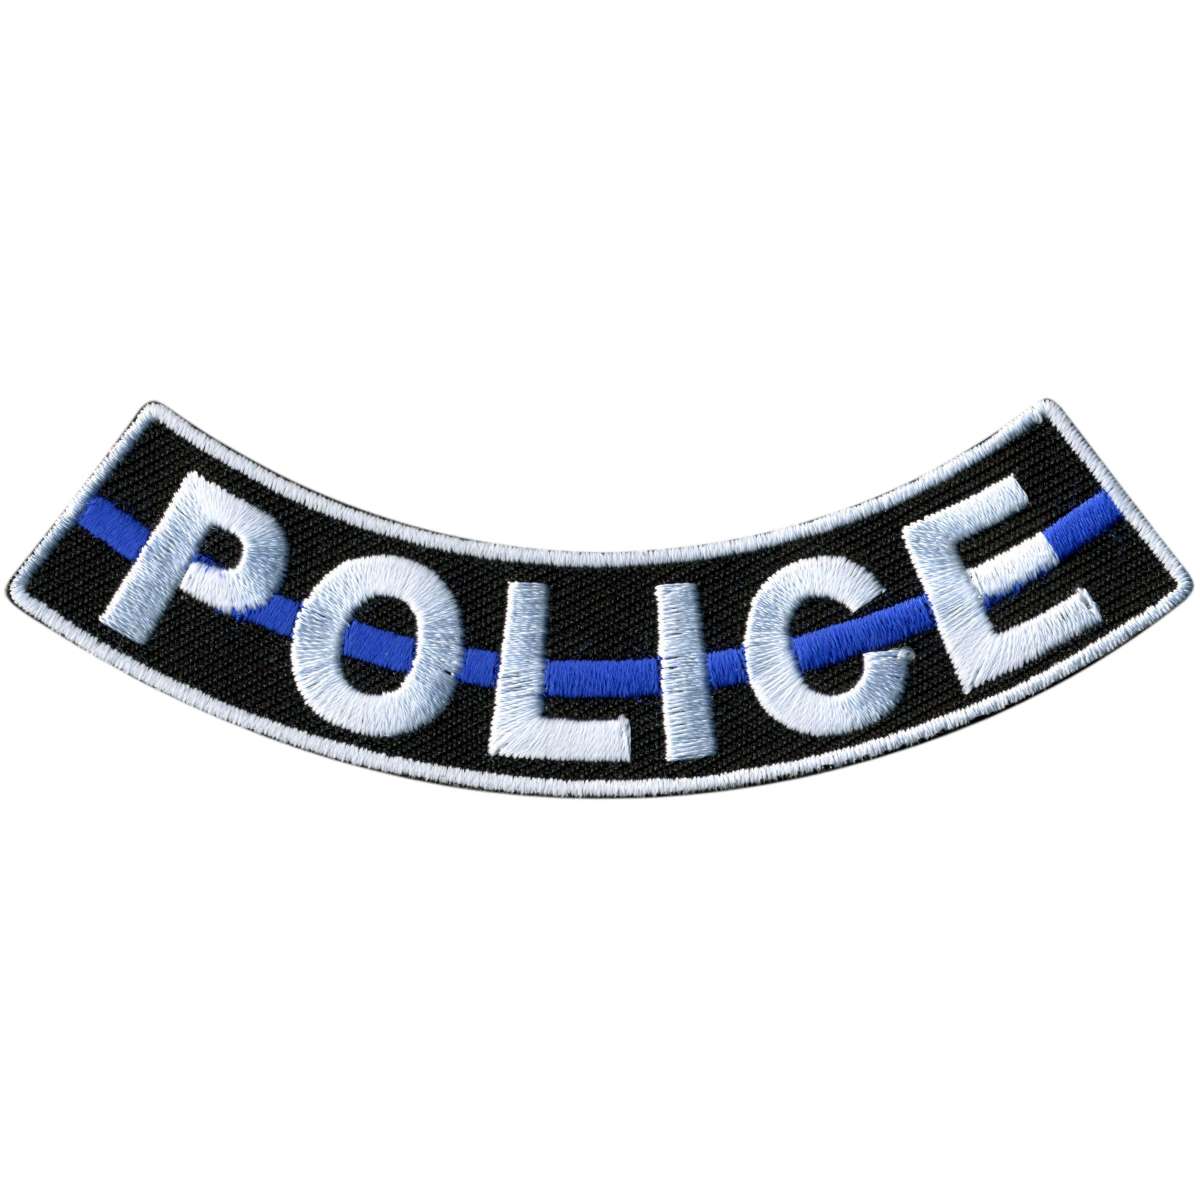 Hot Leathers Police 4” X 1” Bottom Rocker Patch PPM5148